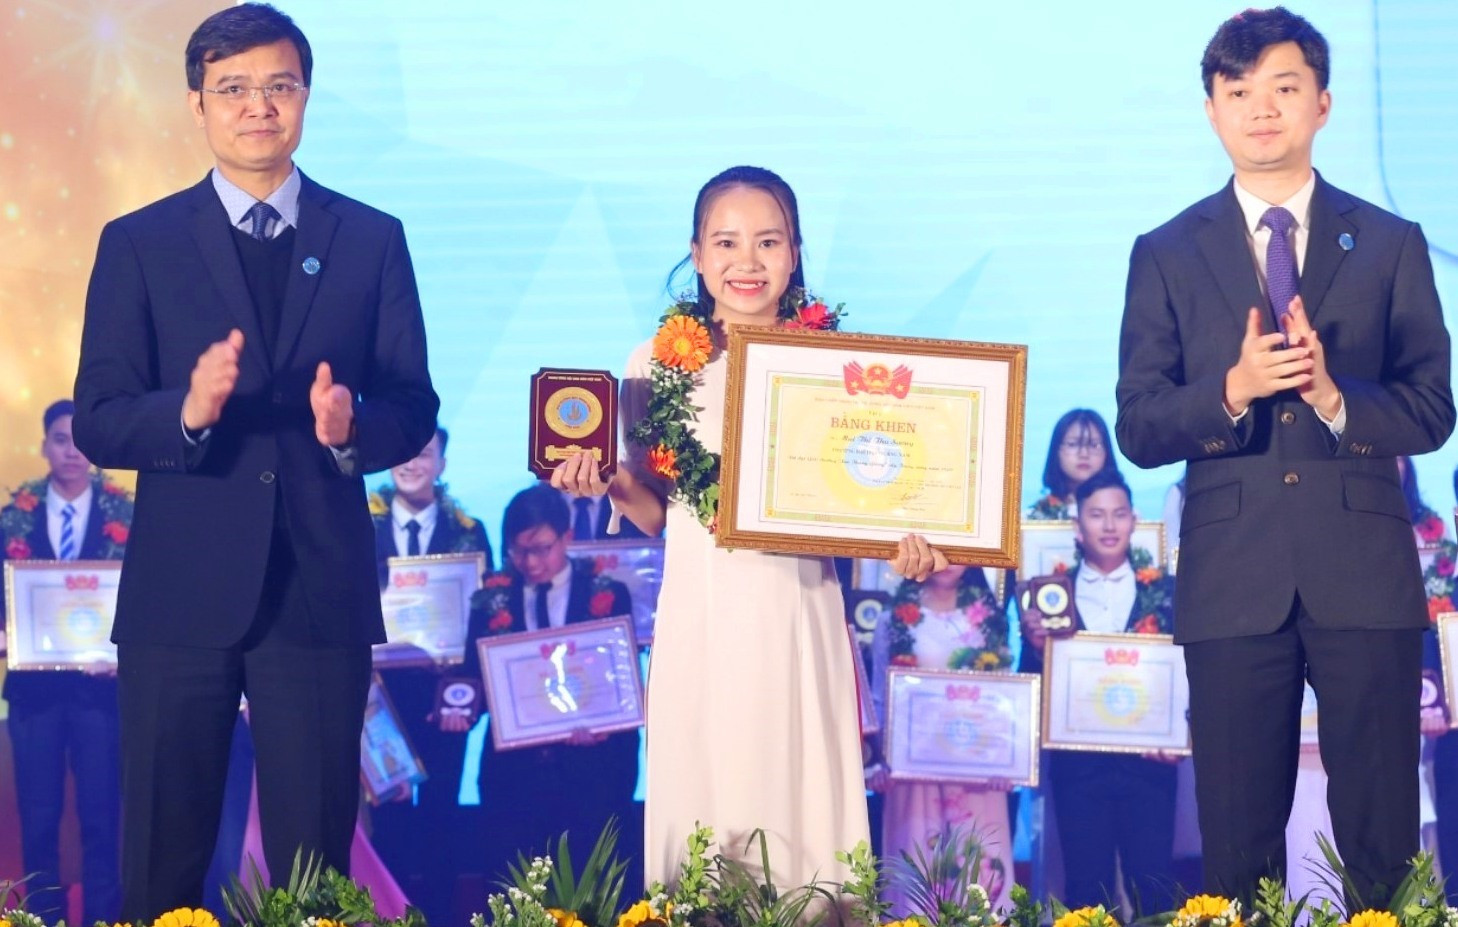 Mai Thị Thu Sương nhận giải thưởng “Sao tháng Giêng” năm 2020. Ảnh: Nhân vật cung cấp